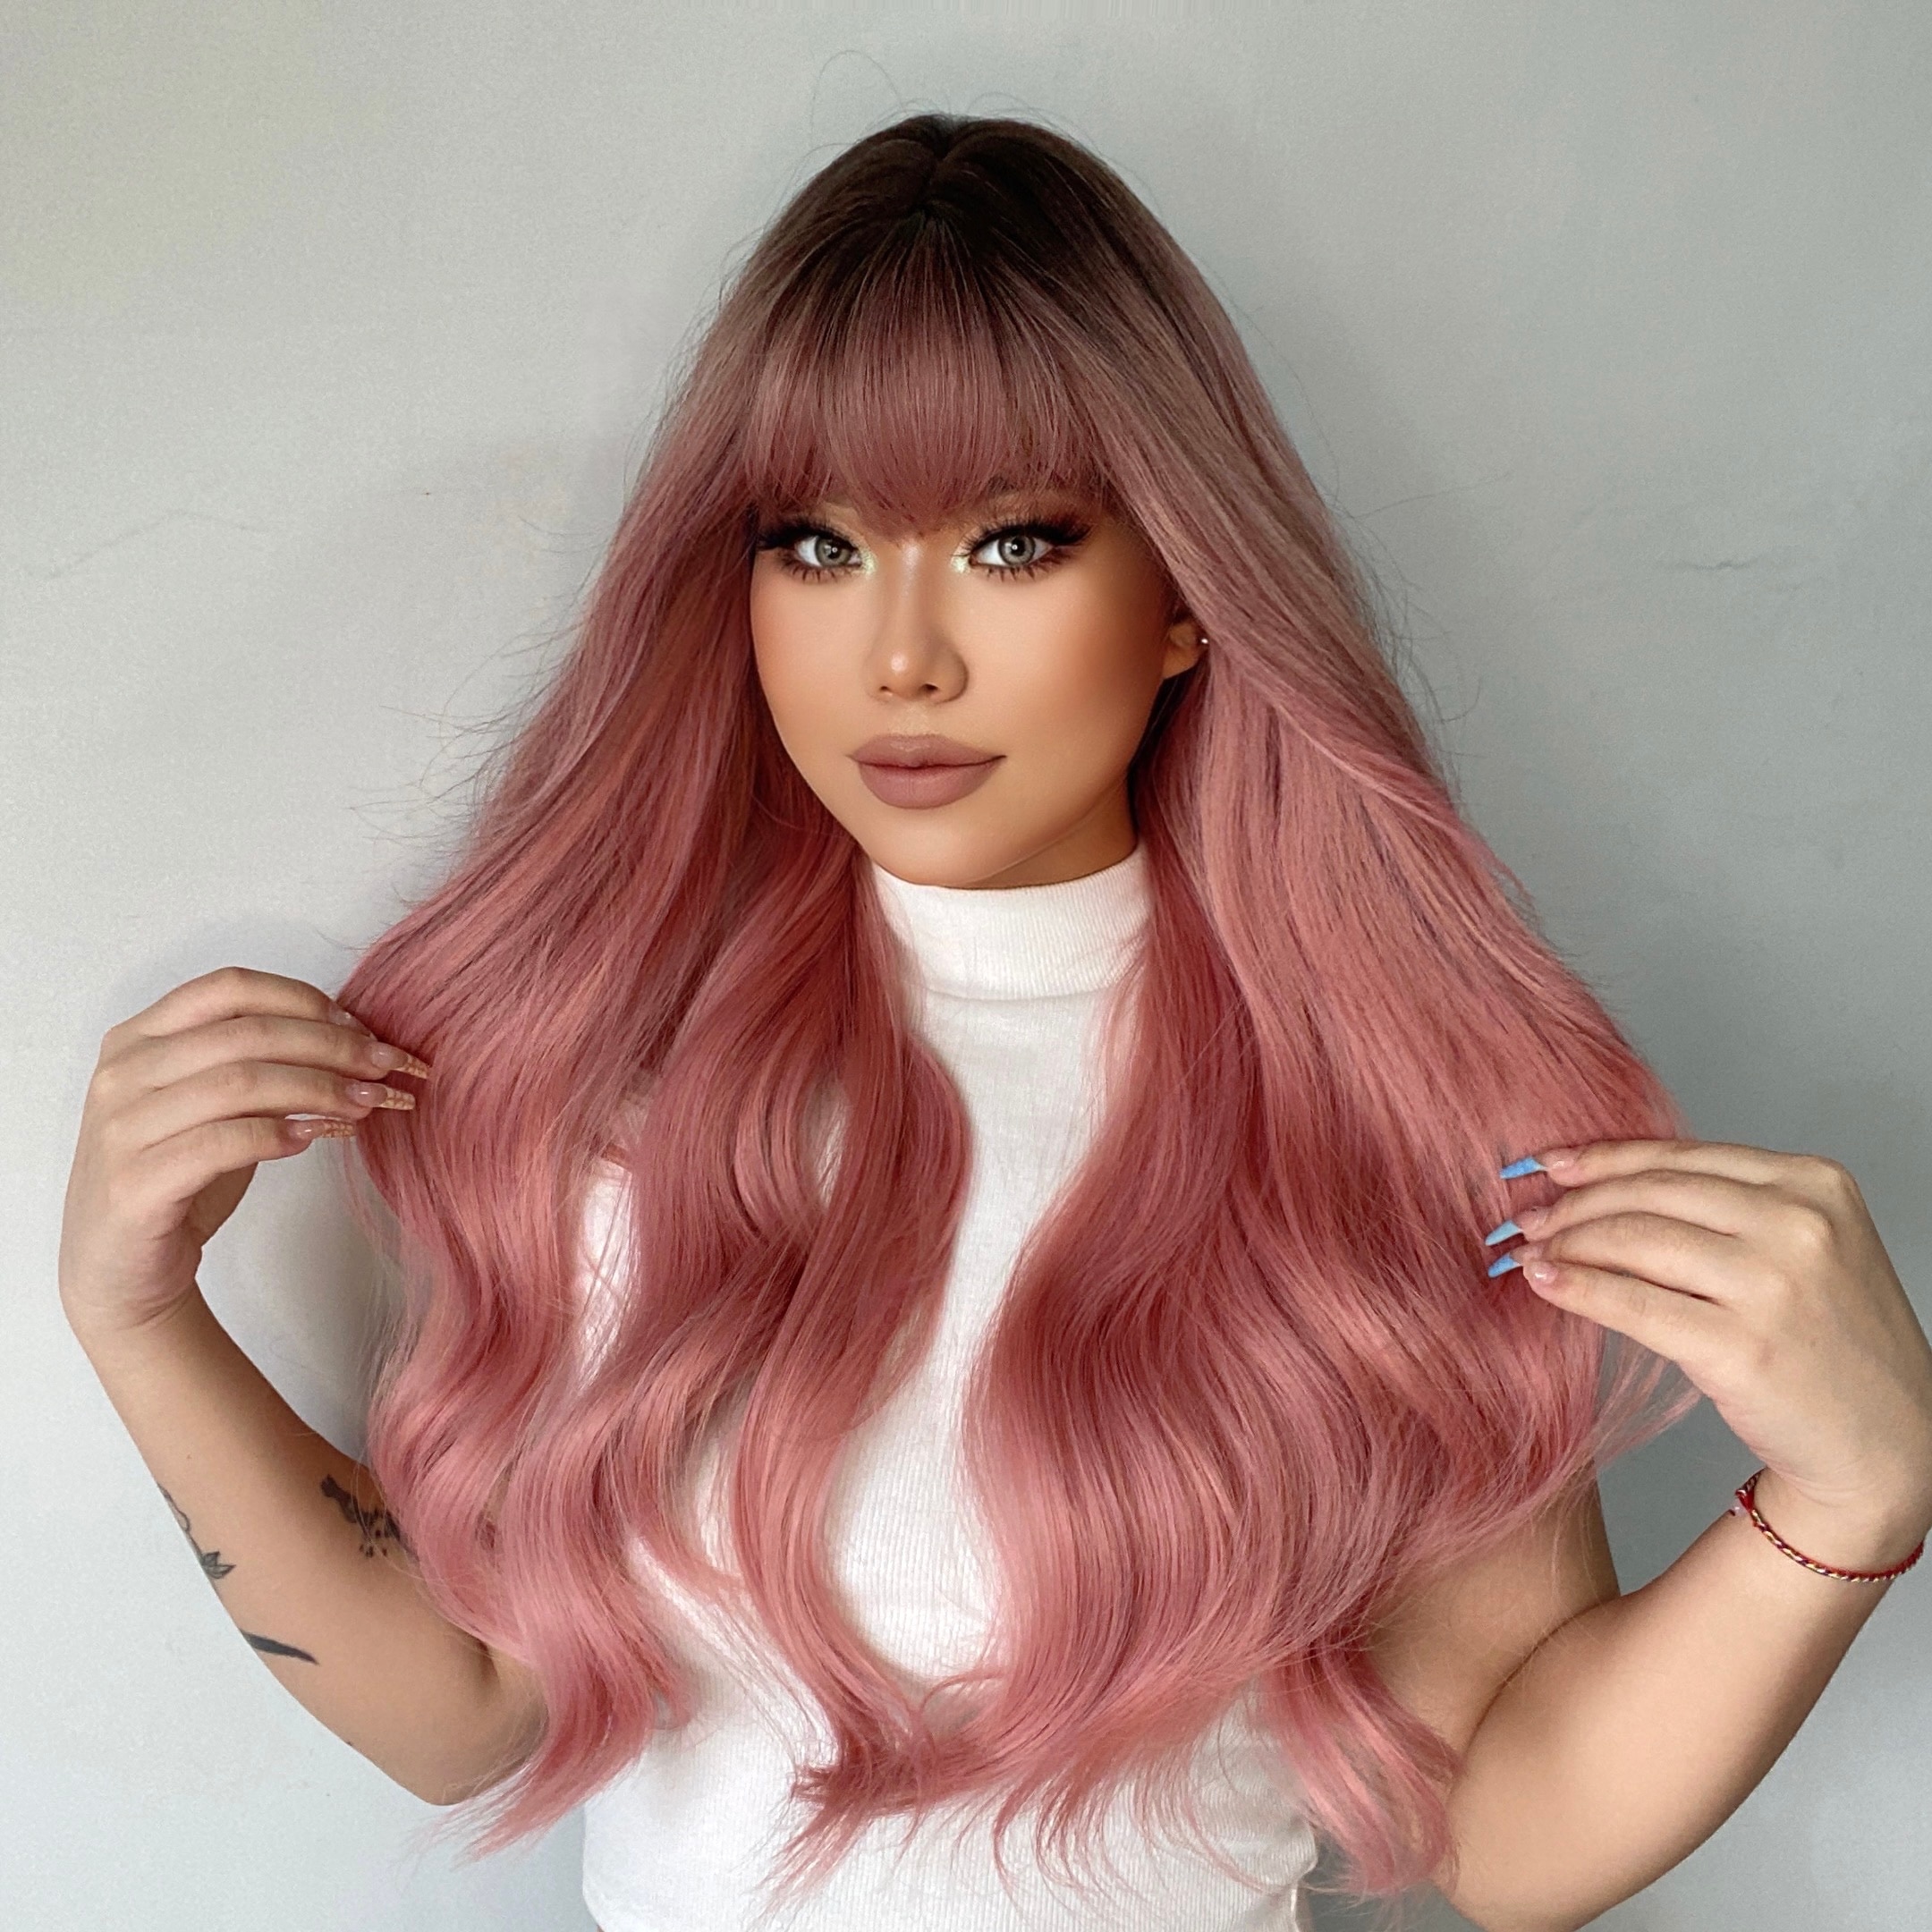 Dài lượn sóng màu đen - hồng - xám là sự kết hợp tuyệt vời cho một mái tóc ombre đẹp và độc đáo. Tóc ombre đen hồng sẽ giúp bạn nổi bật và tự tin hơn với phong cách tóc mới lạ. Xem ảnh để cảm nhận ngay sự khác biệt của tóc ombre đen hồng.